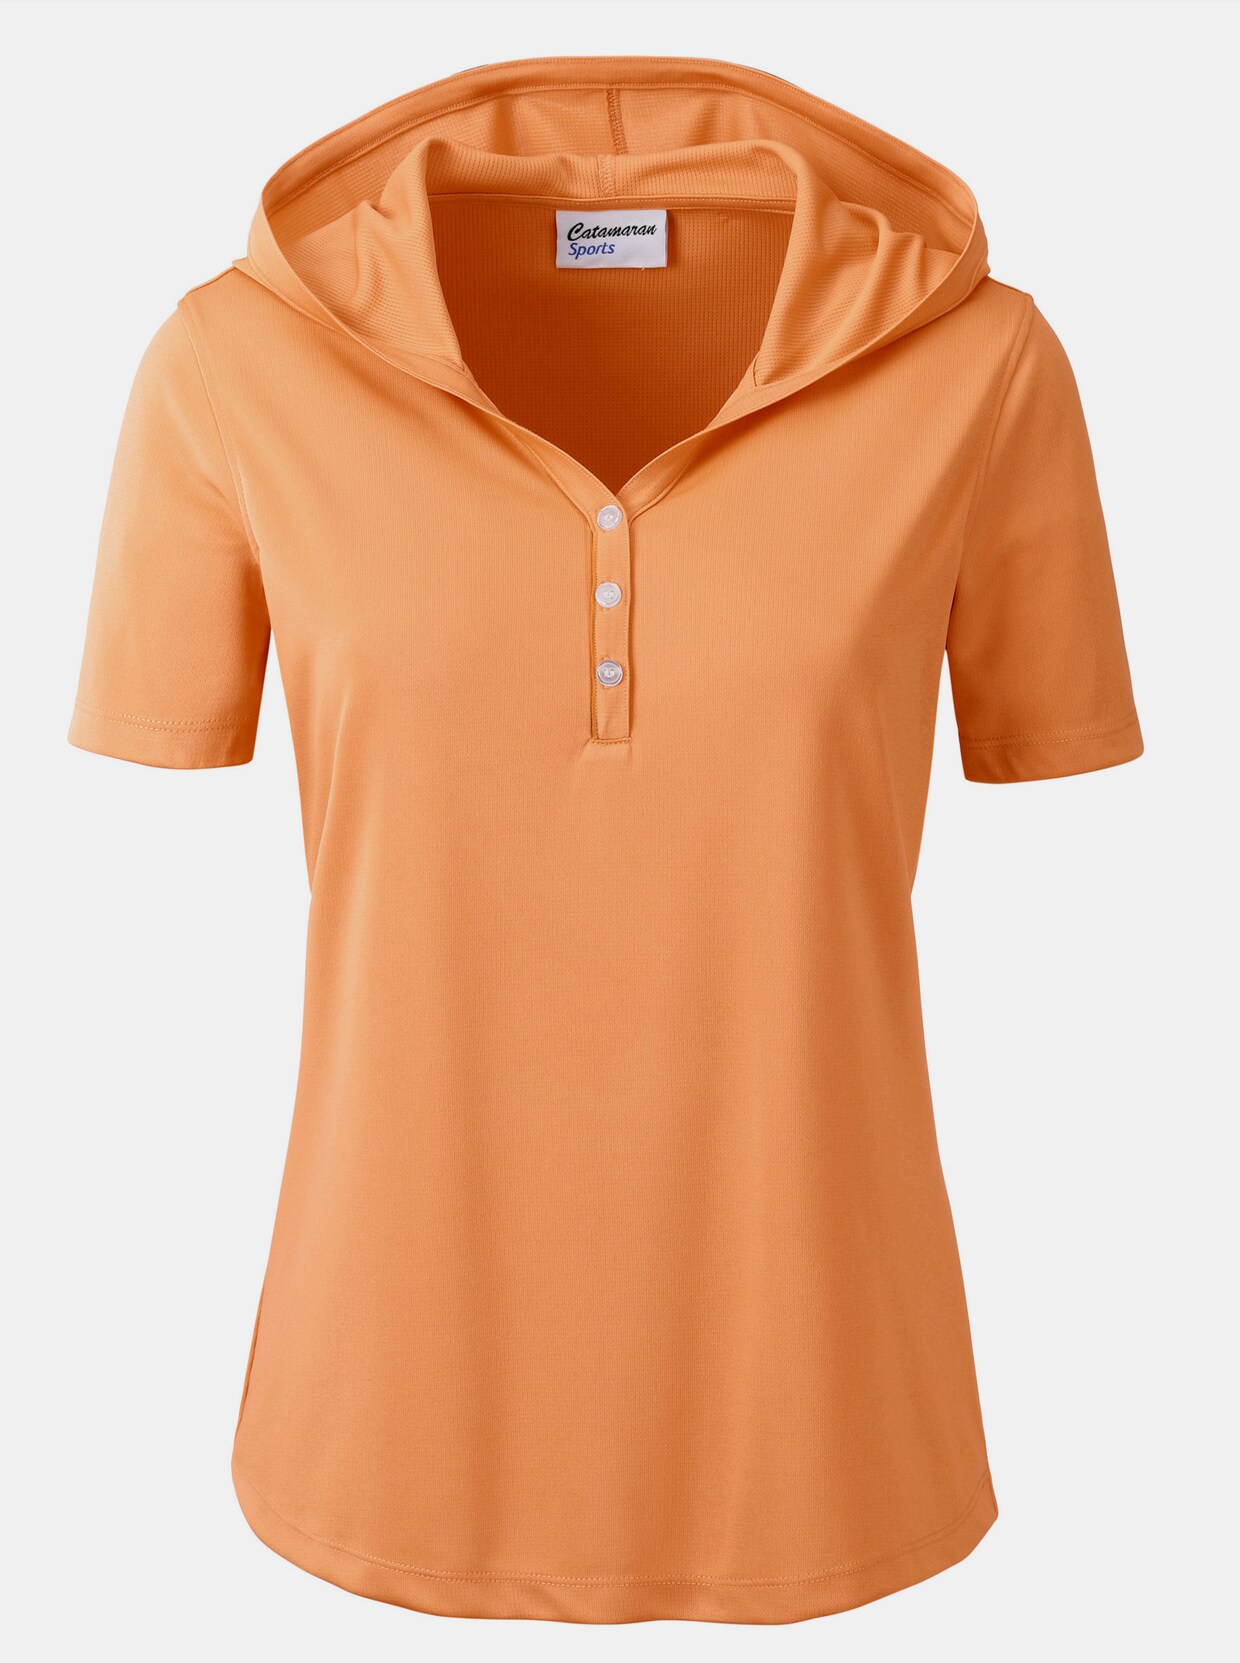 Catamaran Sports T-shirt de sport - abricot